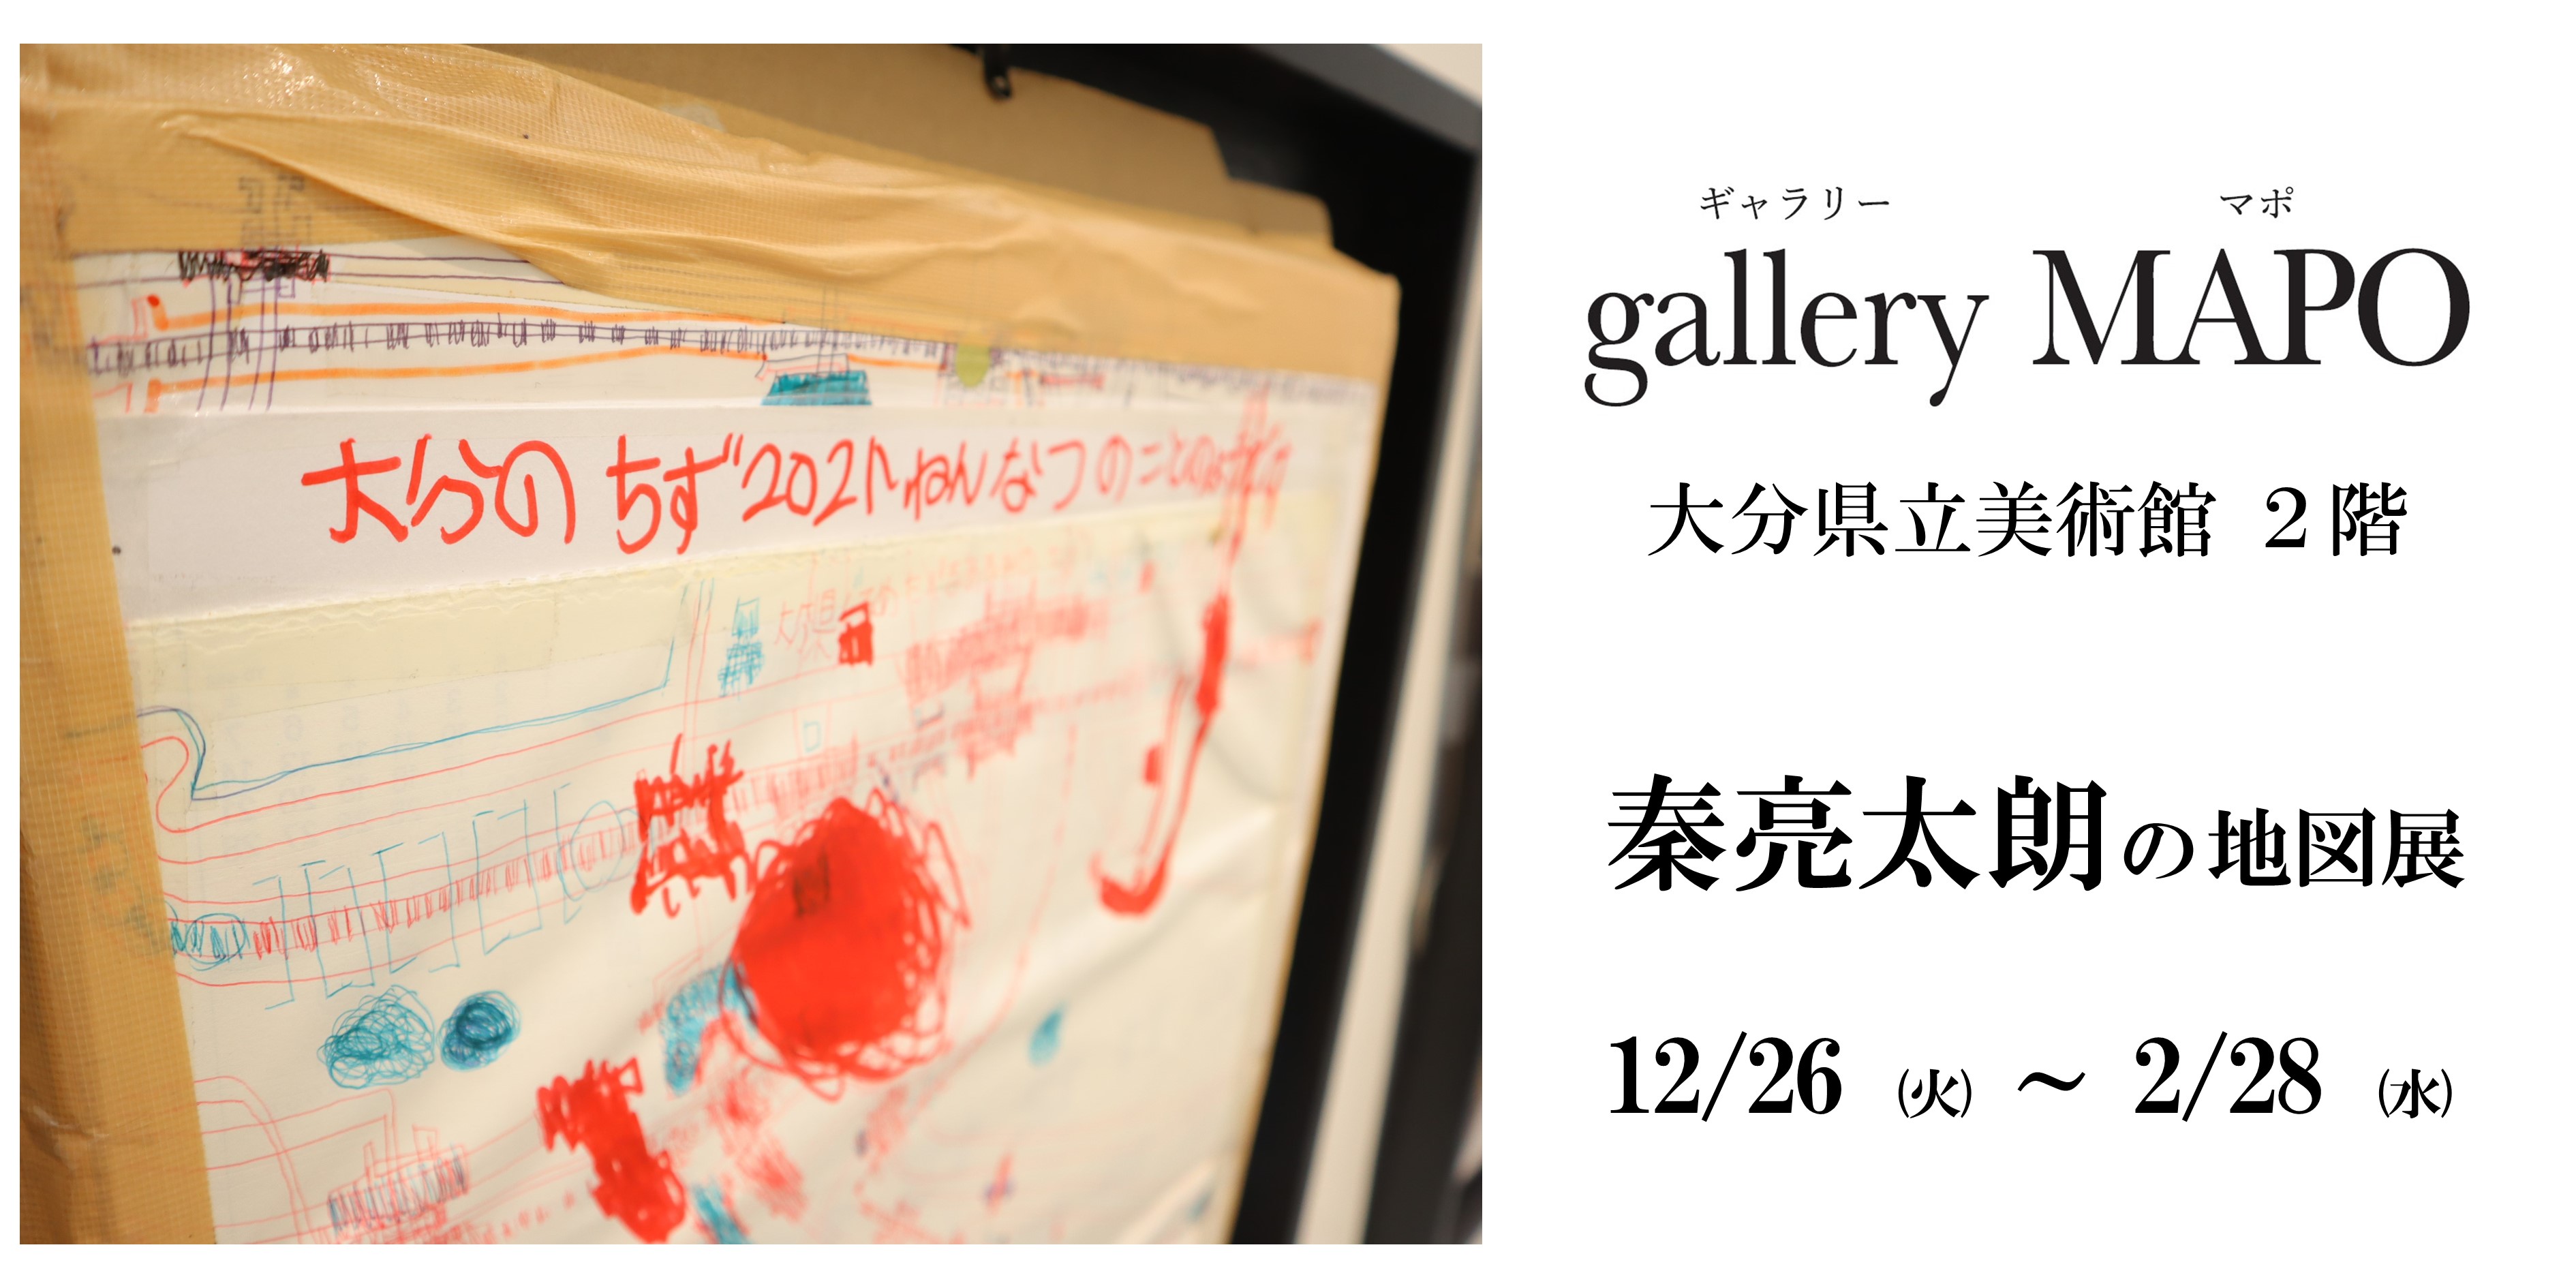 gallery MAPO (ギャラリーマポ)　秦亮太朗の地図展